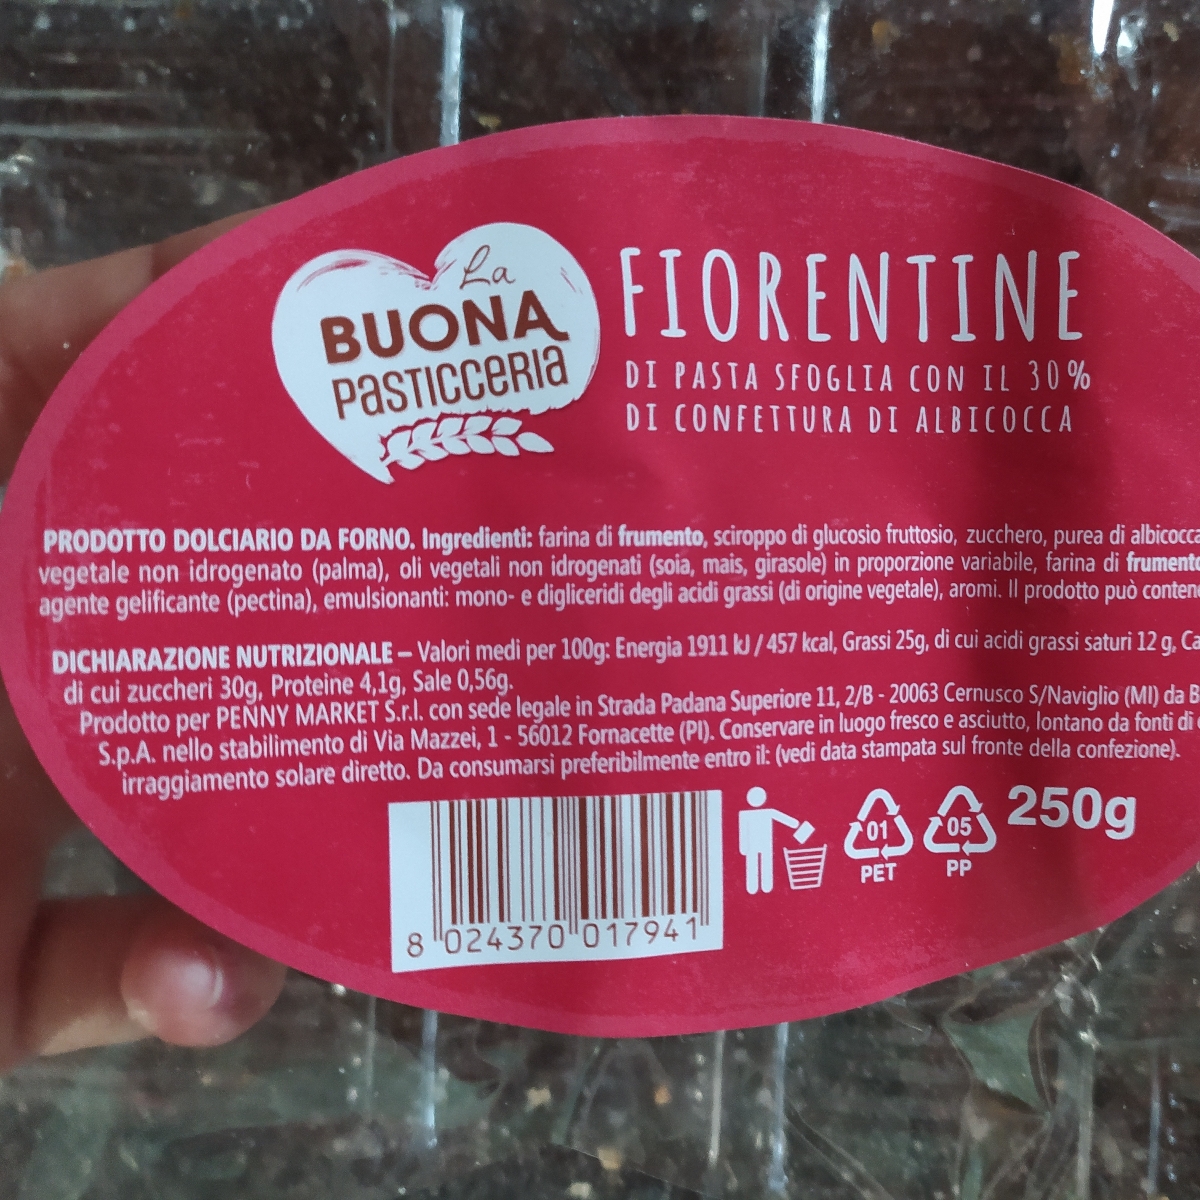 La Buona Pasticceria Fiorentine Reviews | abillion